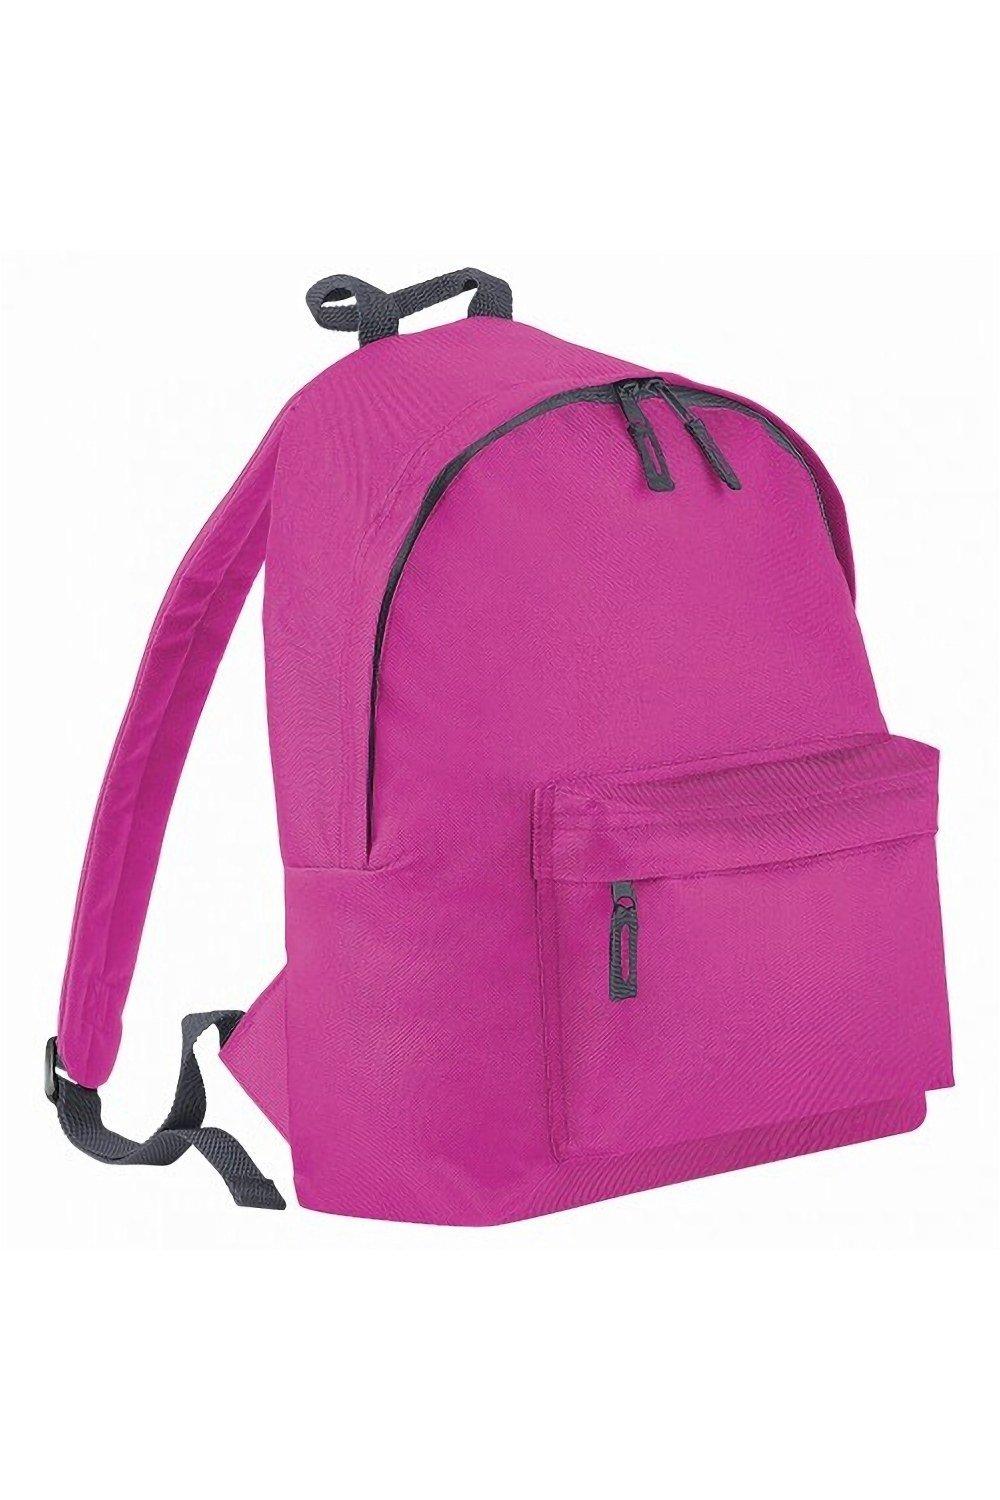 Модный рюкзак / рюкзак (14 литров) (2 шт. в упаковке) Bagbase, розовый